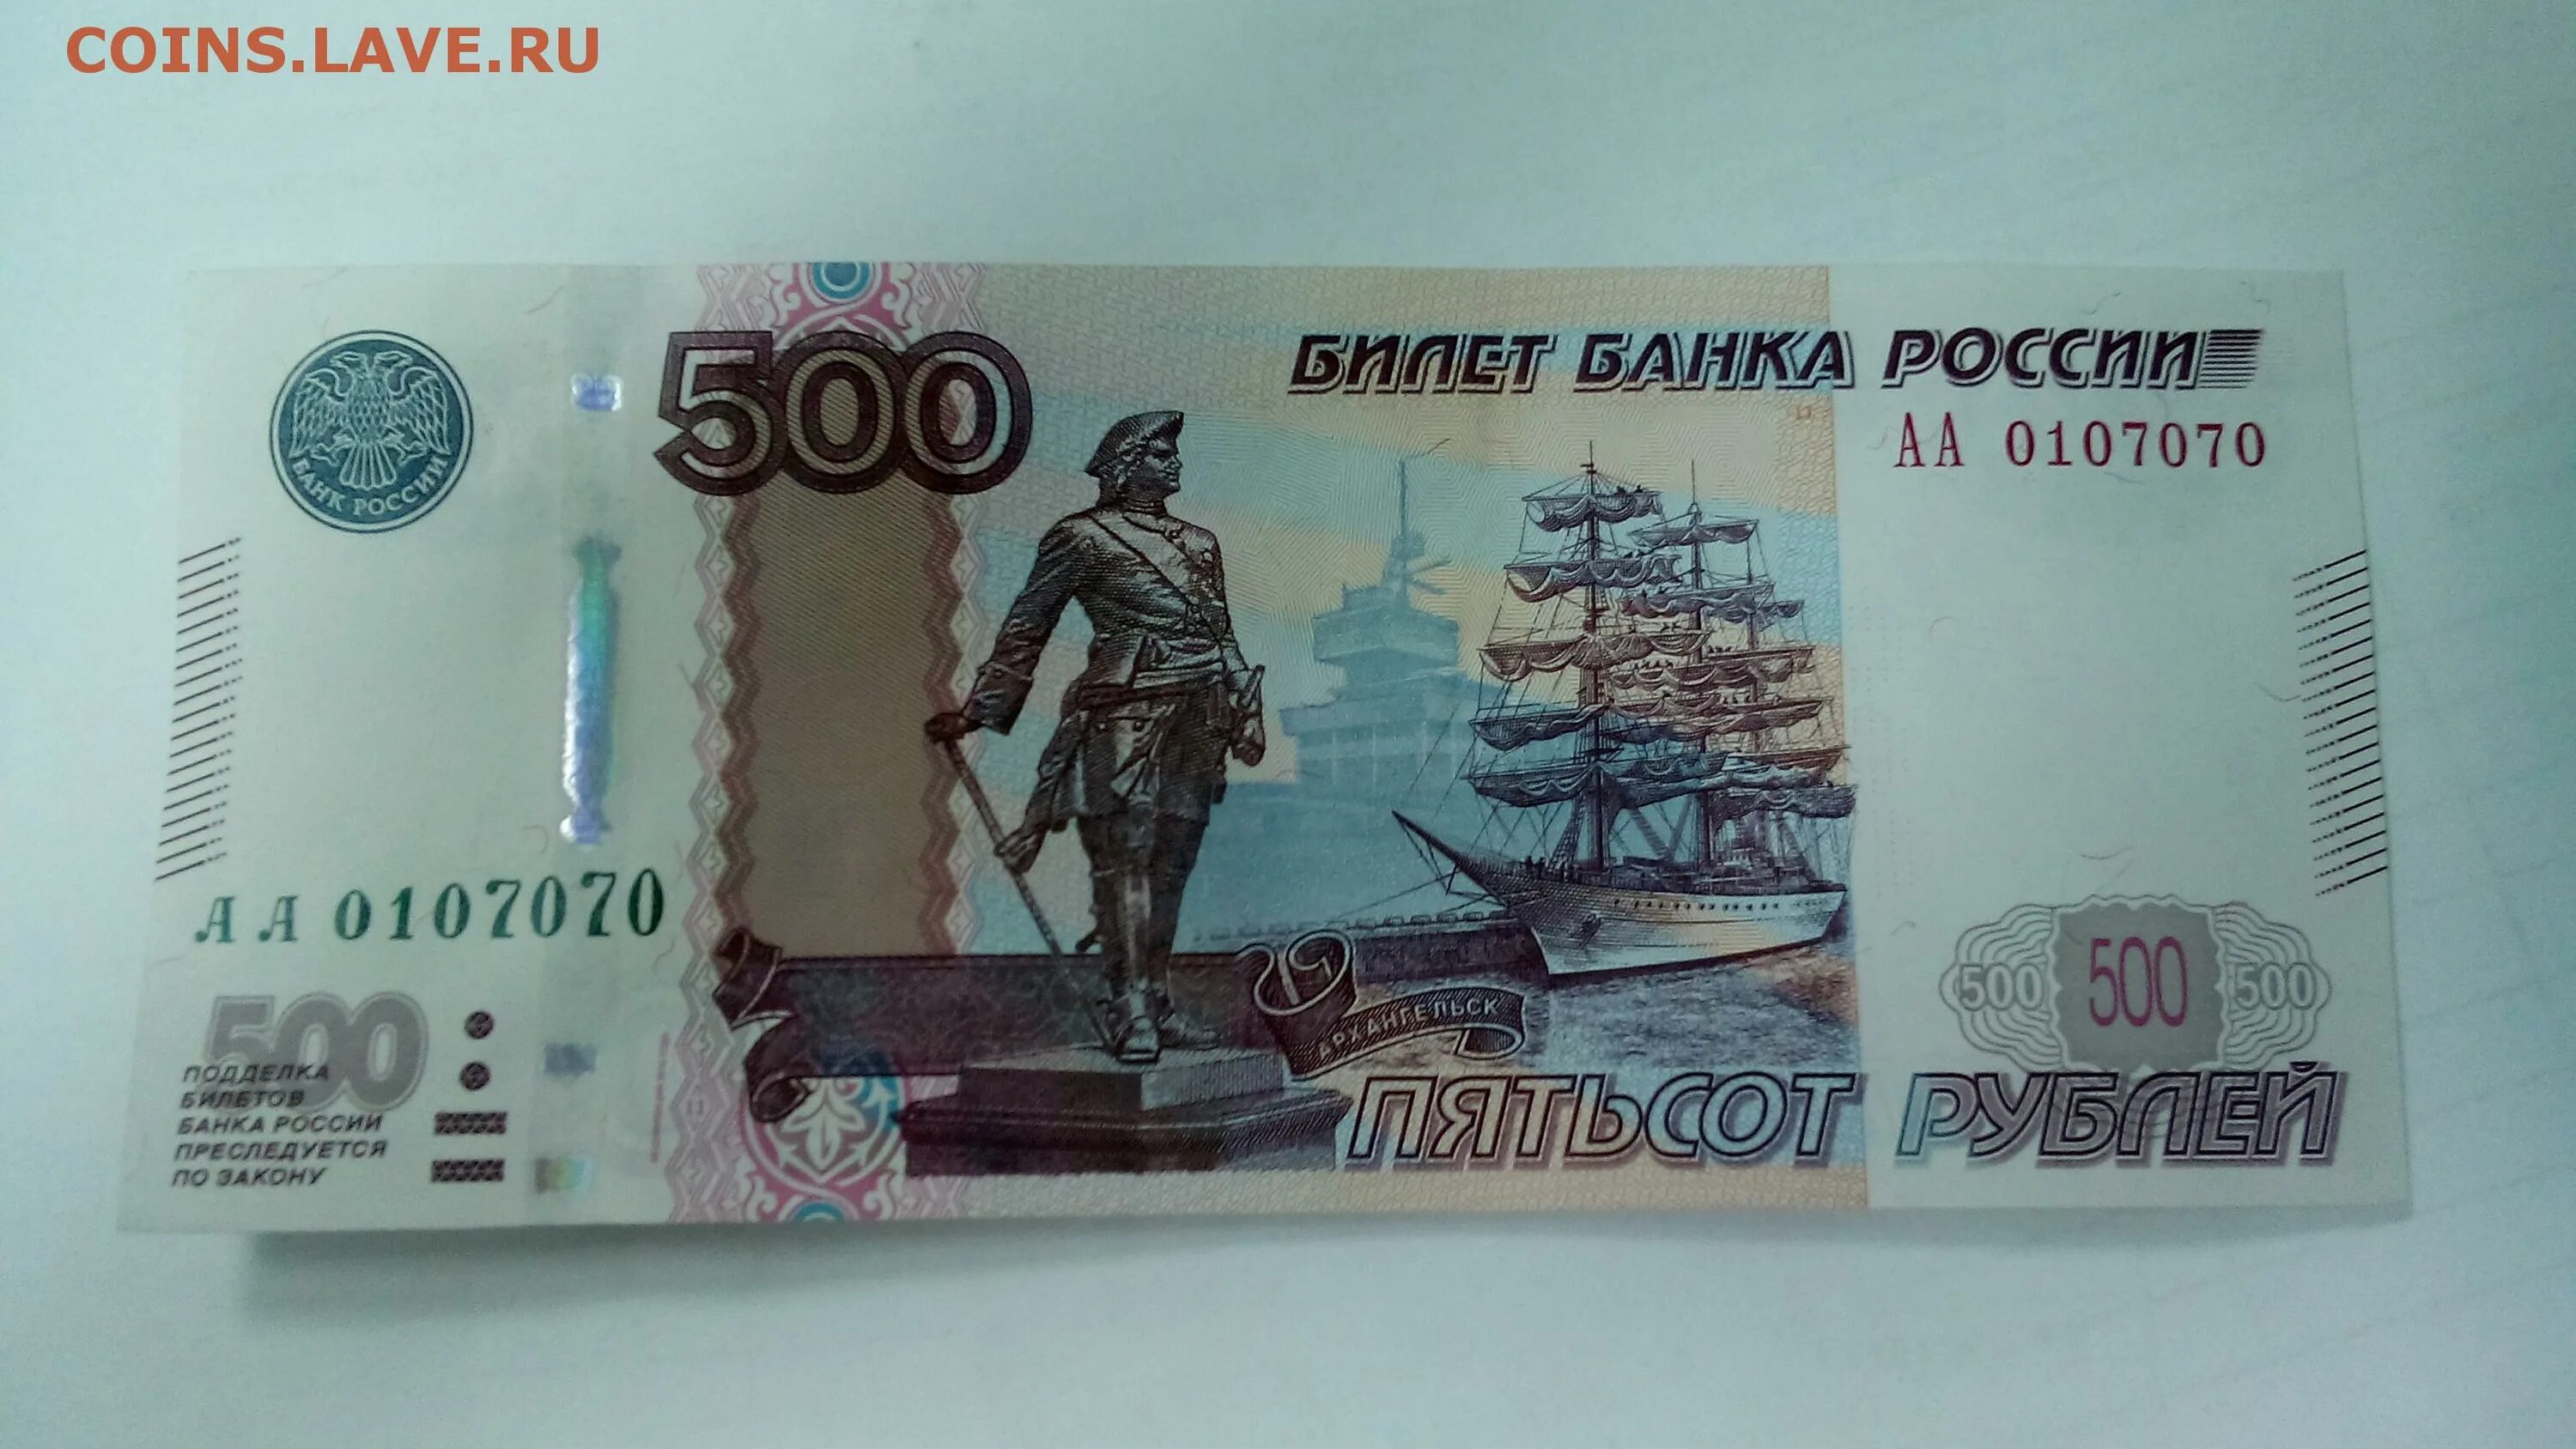 Деньги 500 рублей. Купюра 500 рублей. Банкнота 500 рублей. Купюра 500 рублей 2010.